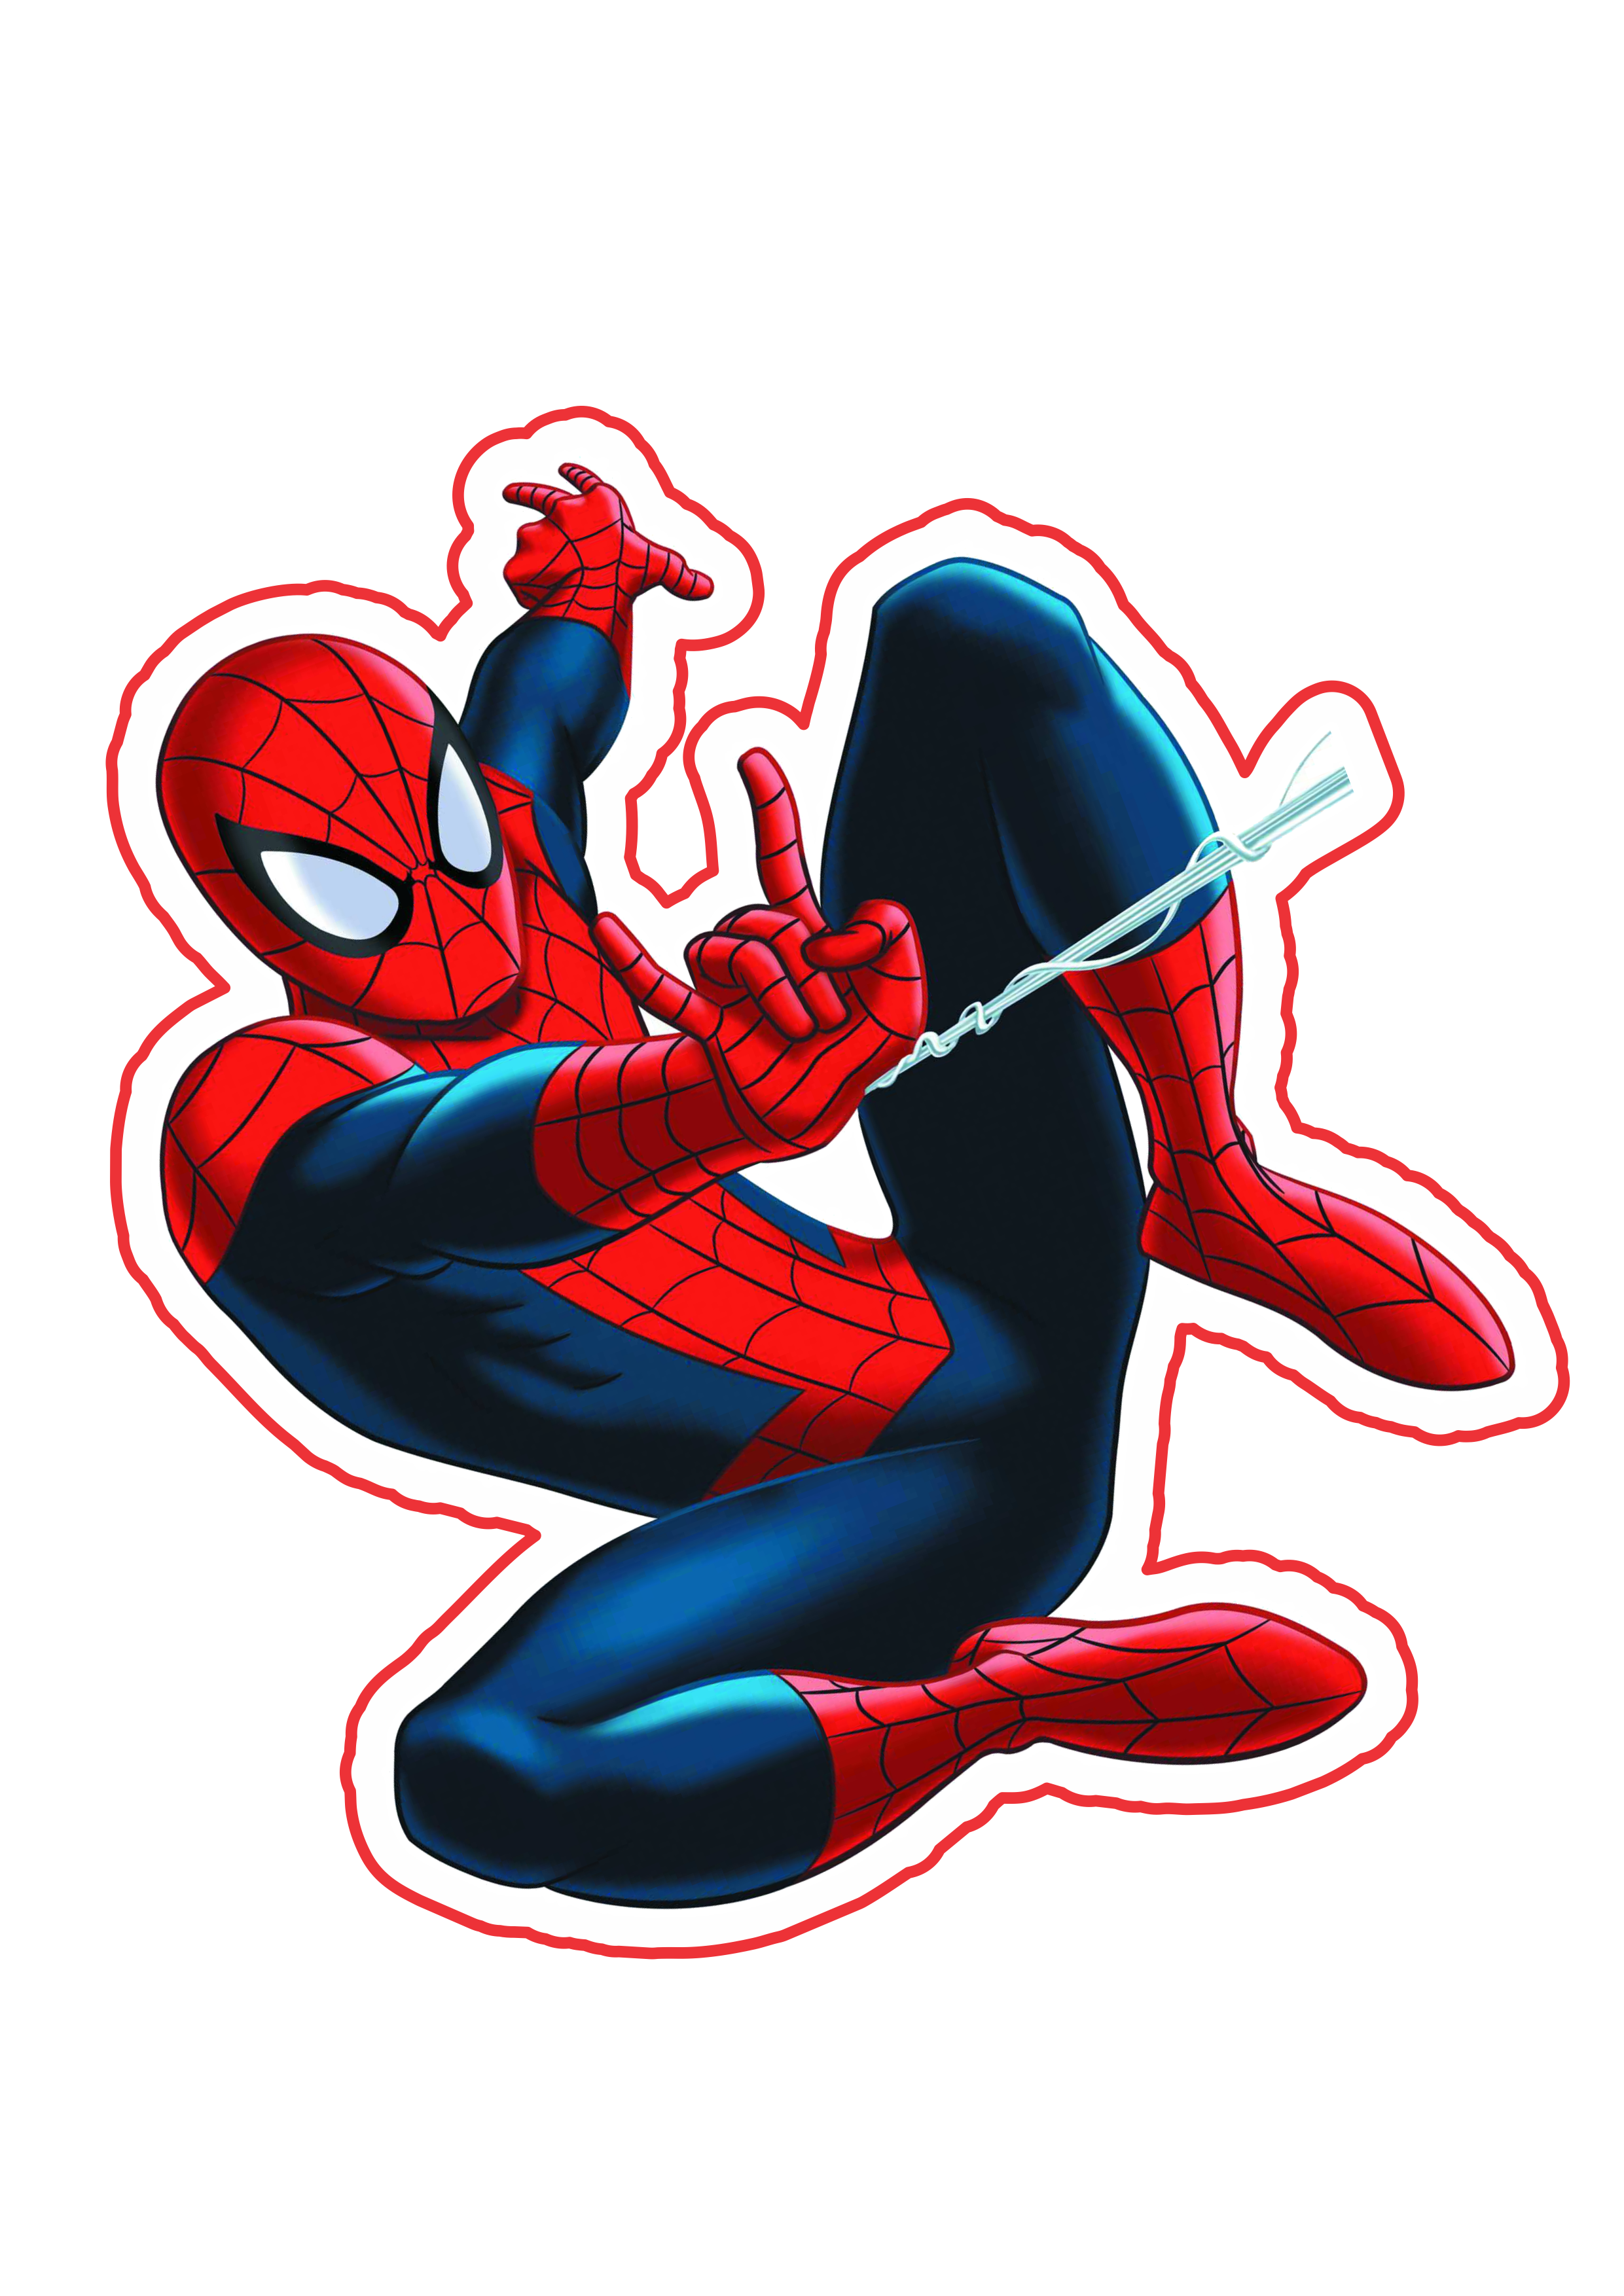 Ultimate Spider-man imagem fundo transparente marvel super heroes png